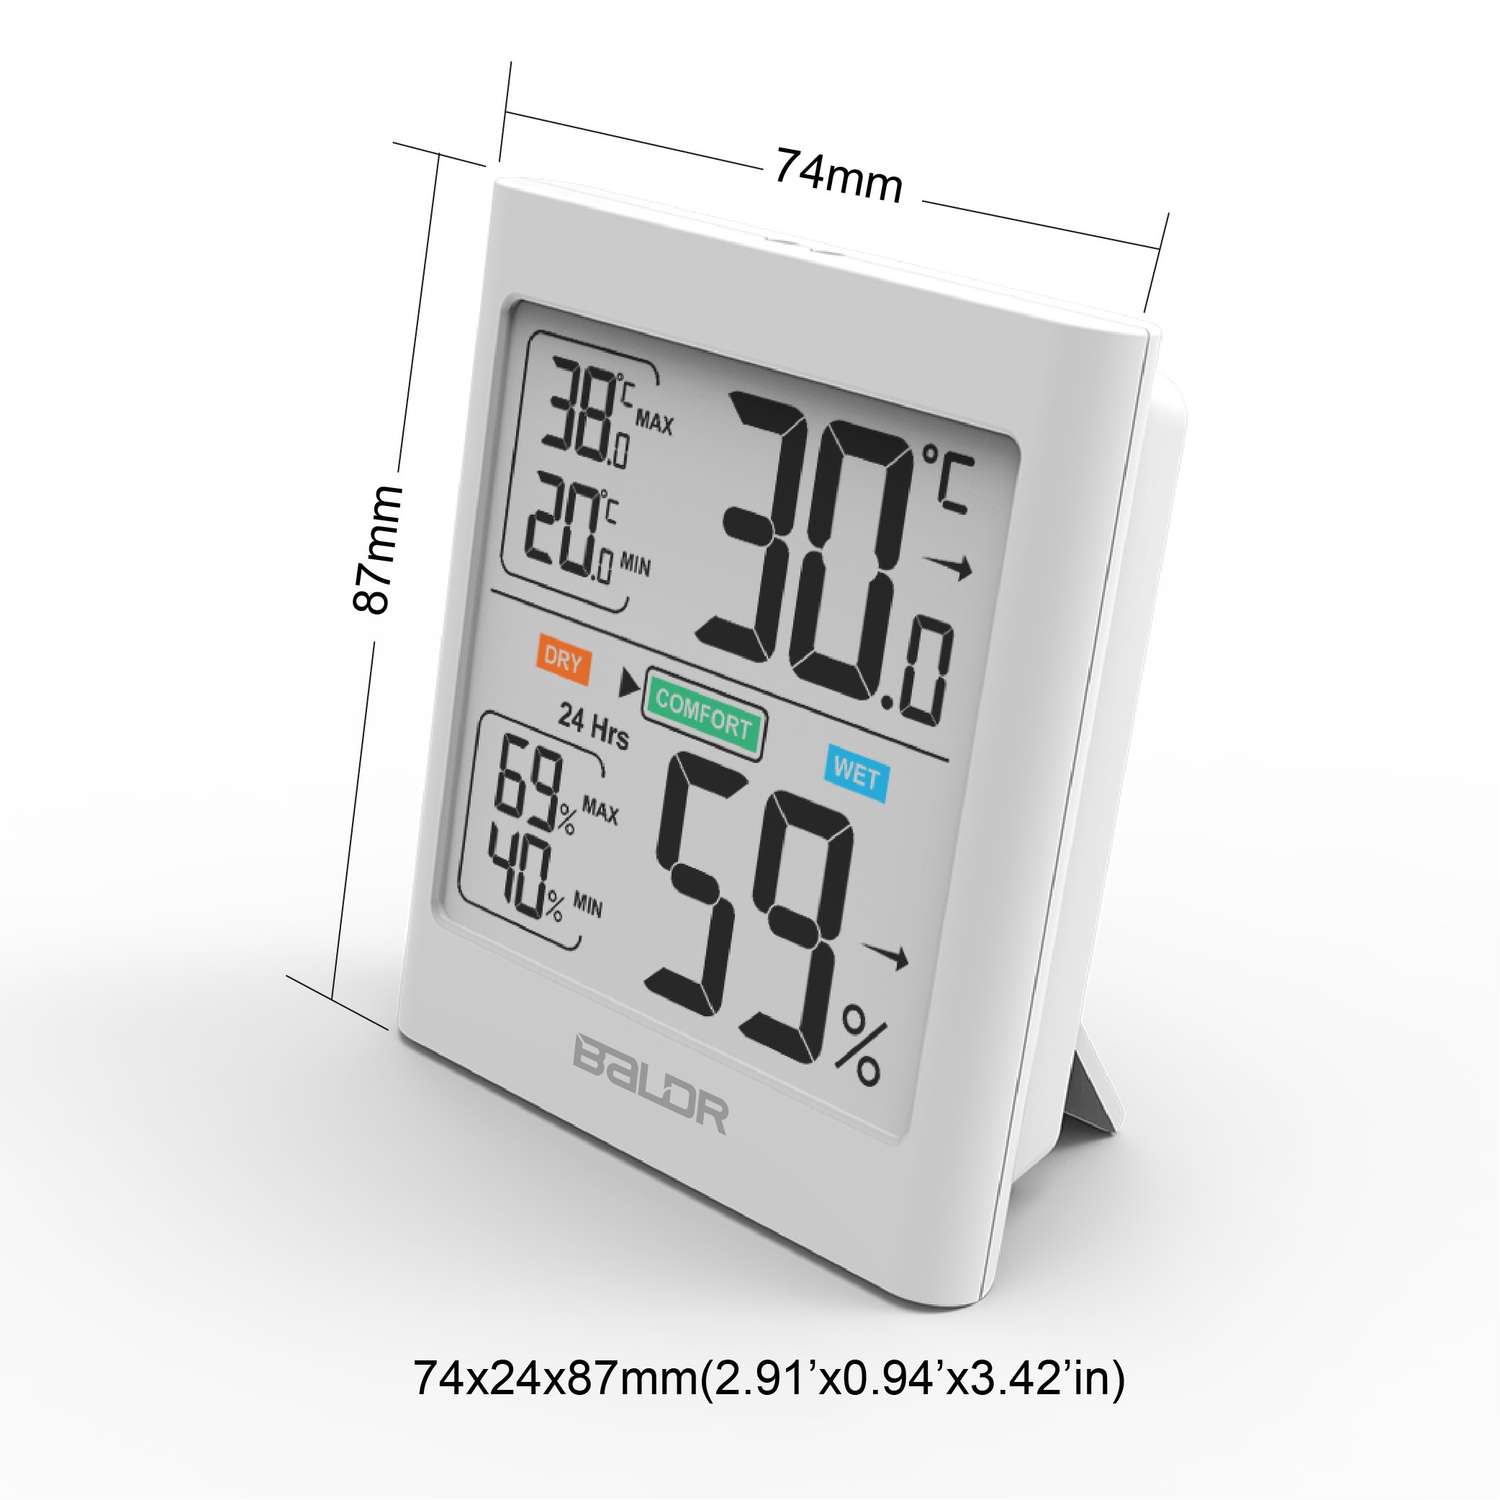 Цифровой термогигрометр Baldr белый - фото 1